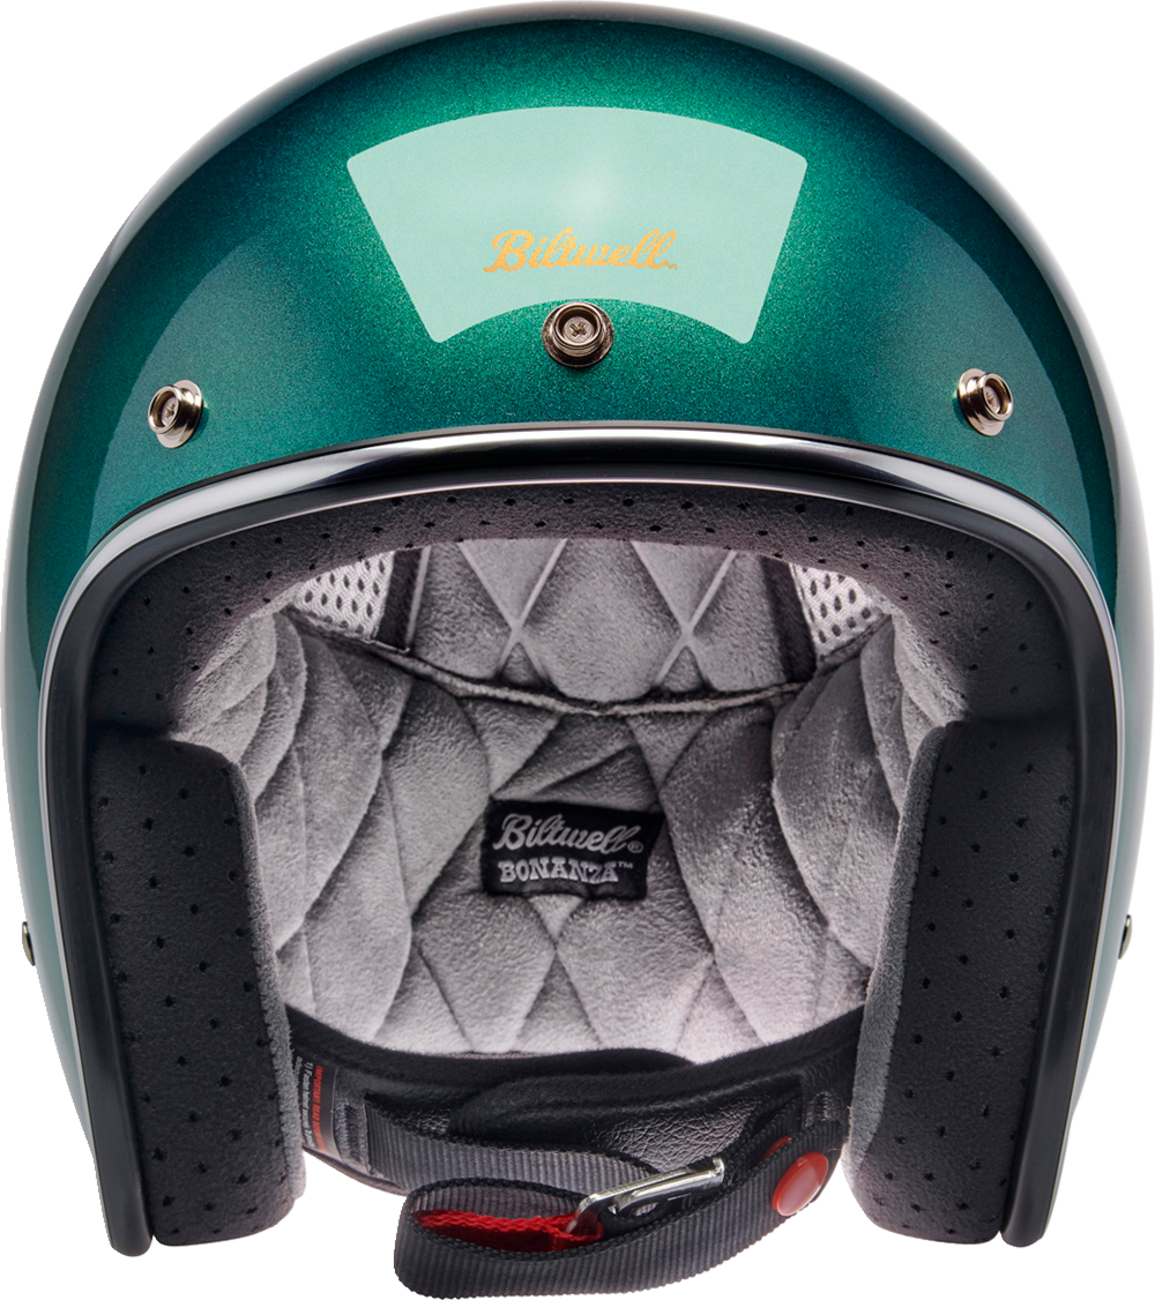 BILTWELL Bonanza Helmet - Metallic Catalina Green - 2XL 1001-358-206